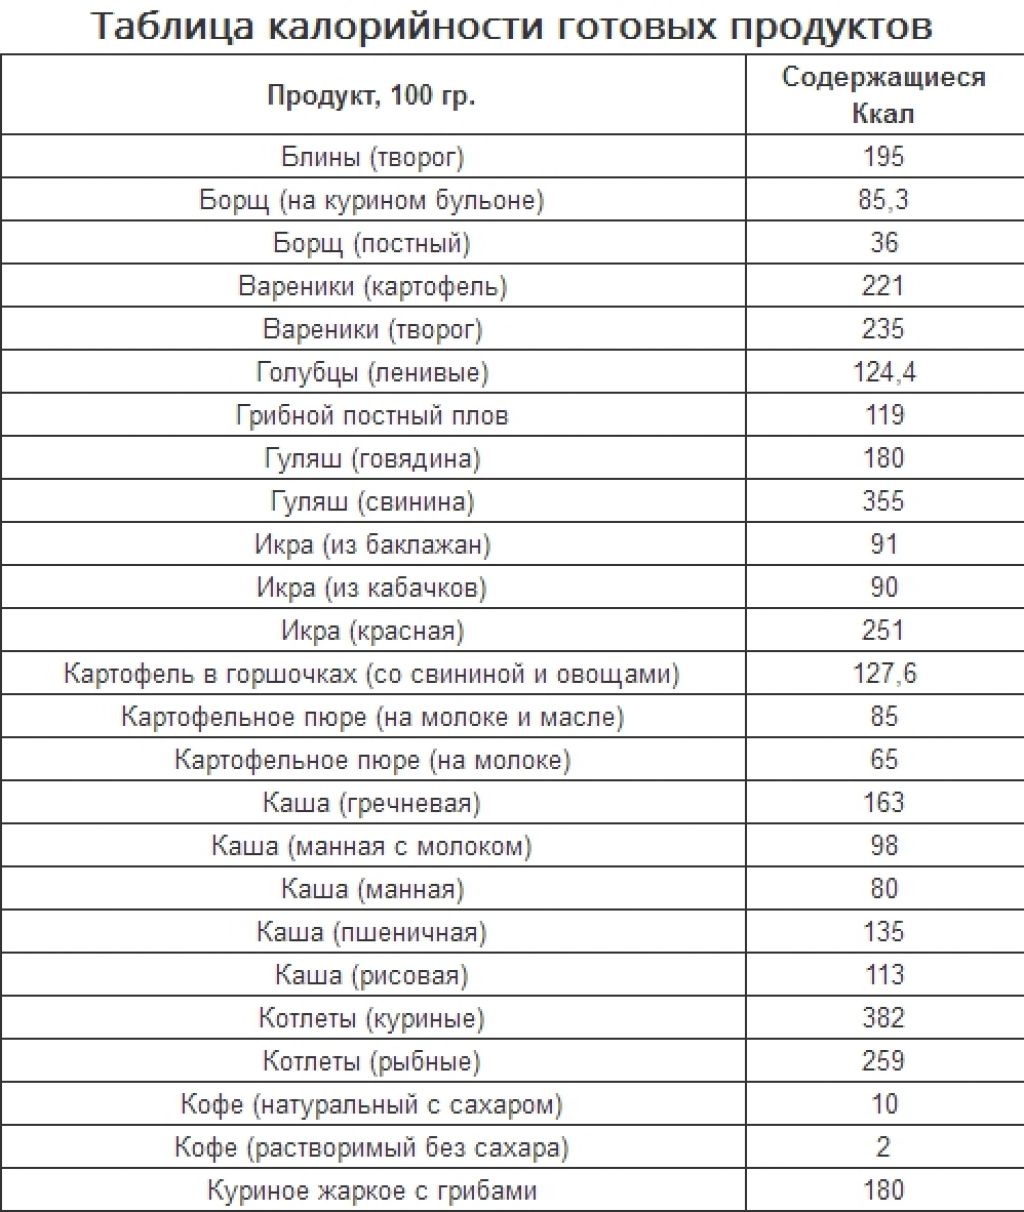 Таблица белков, жиров и углеводов в продуктах питания